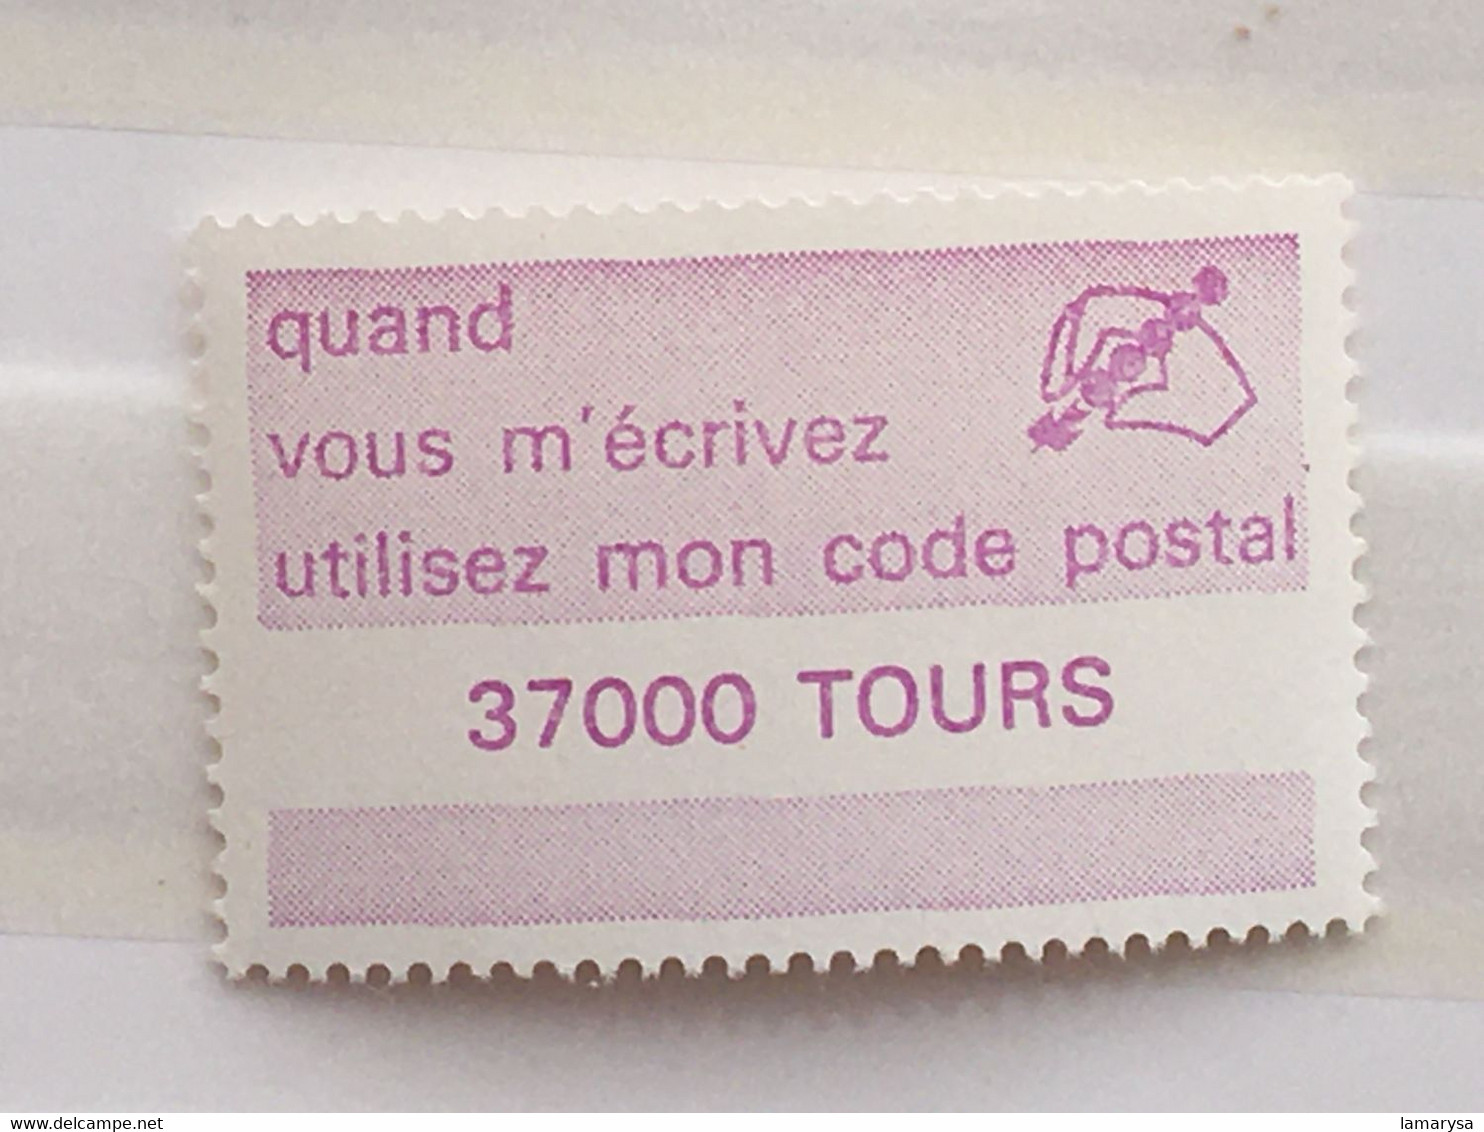 Le Code Postal-Lot 38 Vignette P.T.T. différentes villes-☛Erinnophilie,stamp,Timbre,Label,Sticker-Aufkleber-Bollo-Viñeta